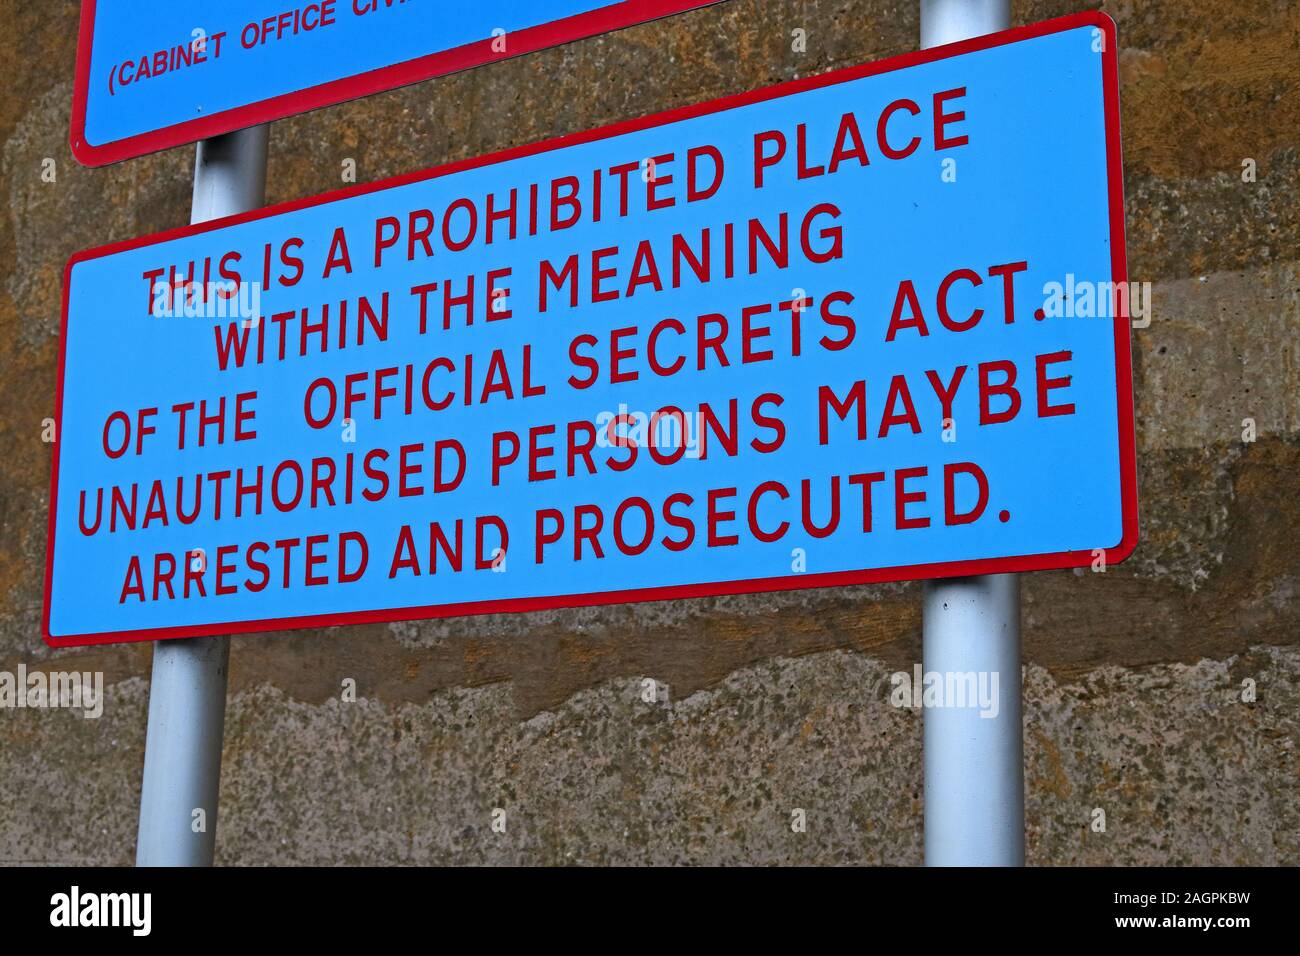 Ministère de la Défense britannique, propriété interdite place, loi sur les secrets officiels, MOD sign Banque D'Images